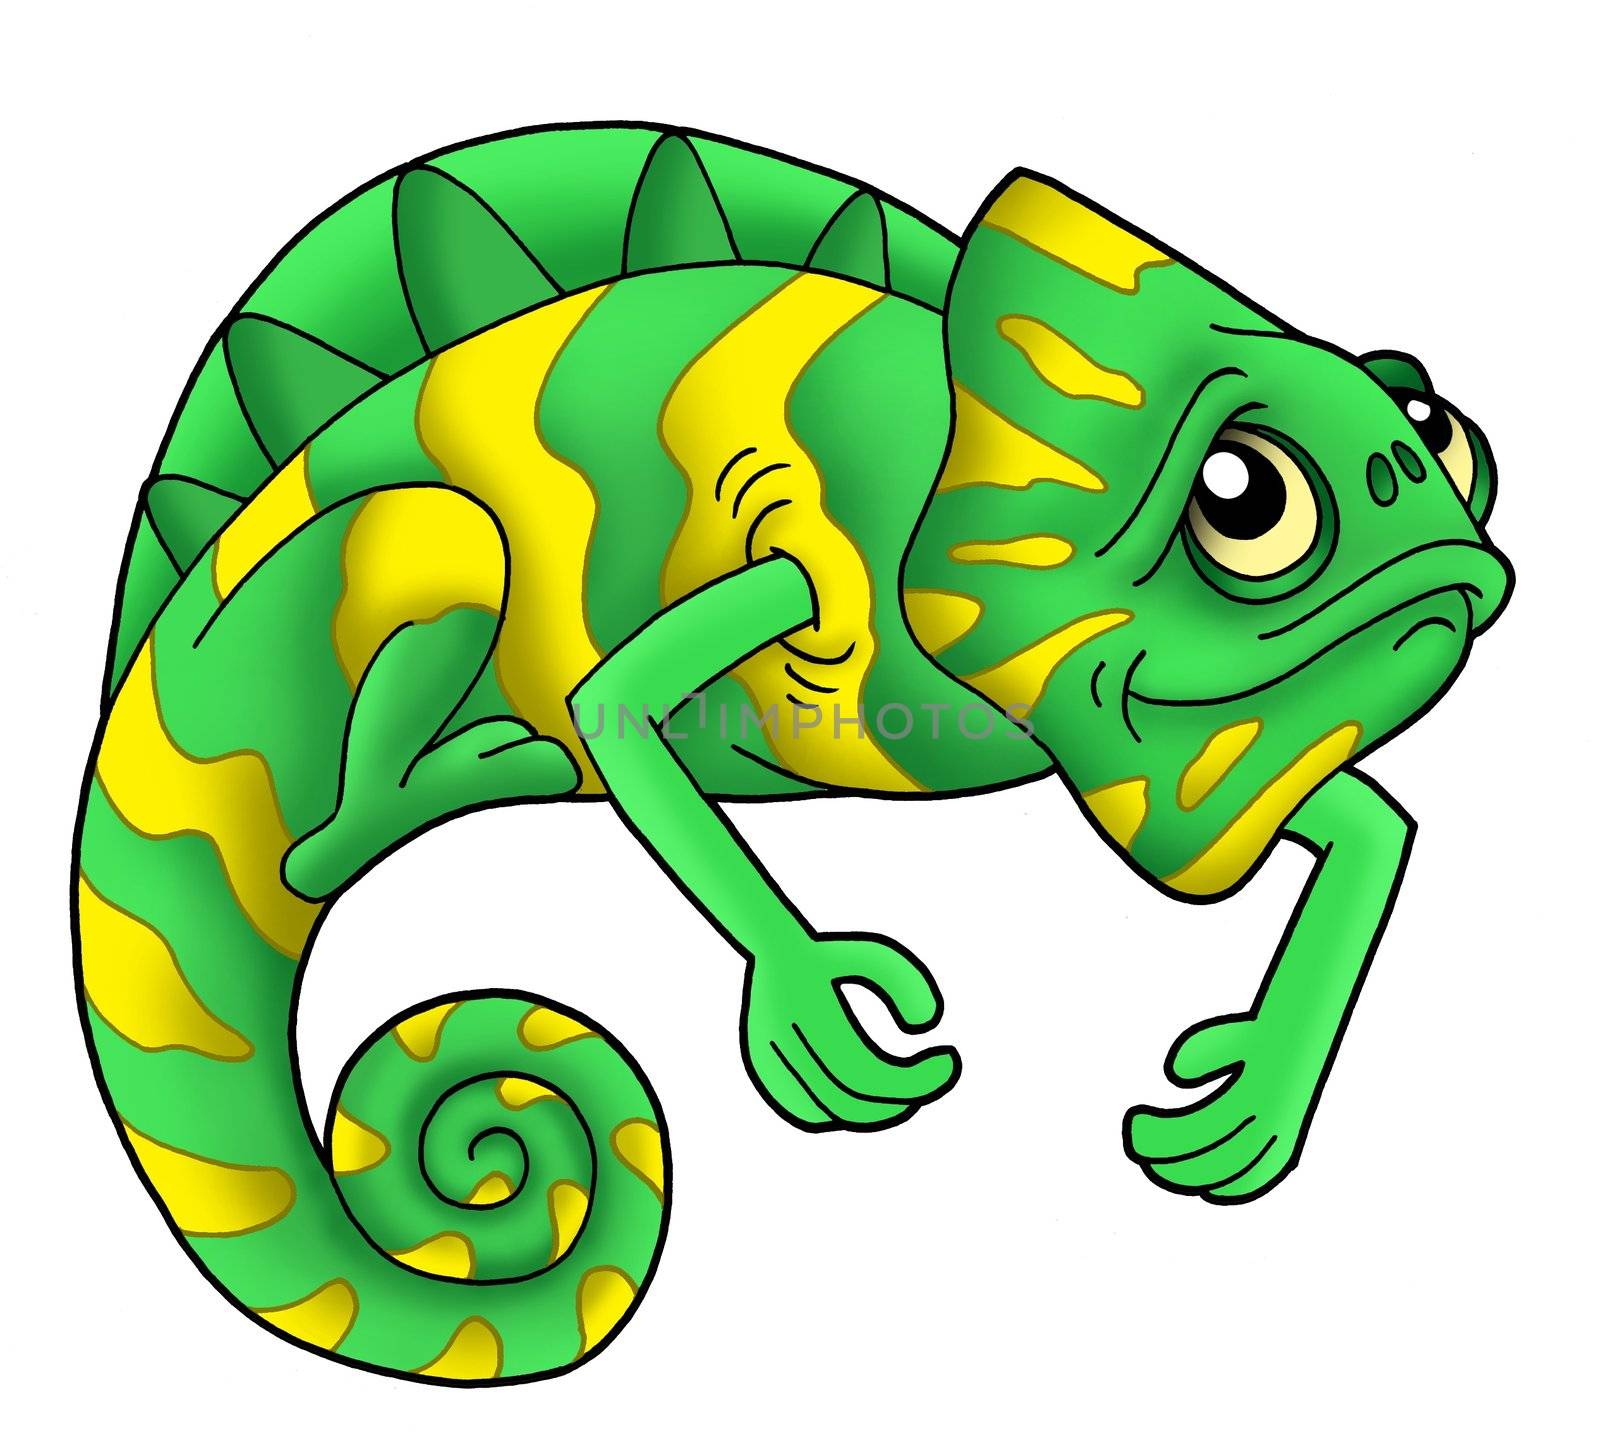 Green chameleon on white background - color illustration.